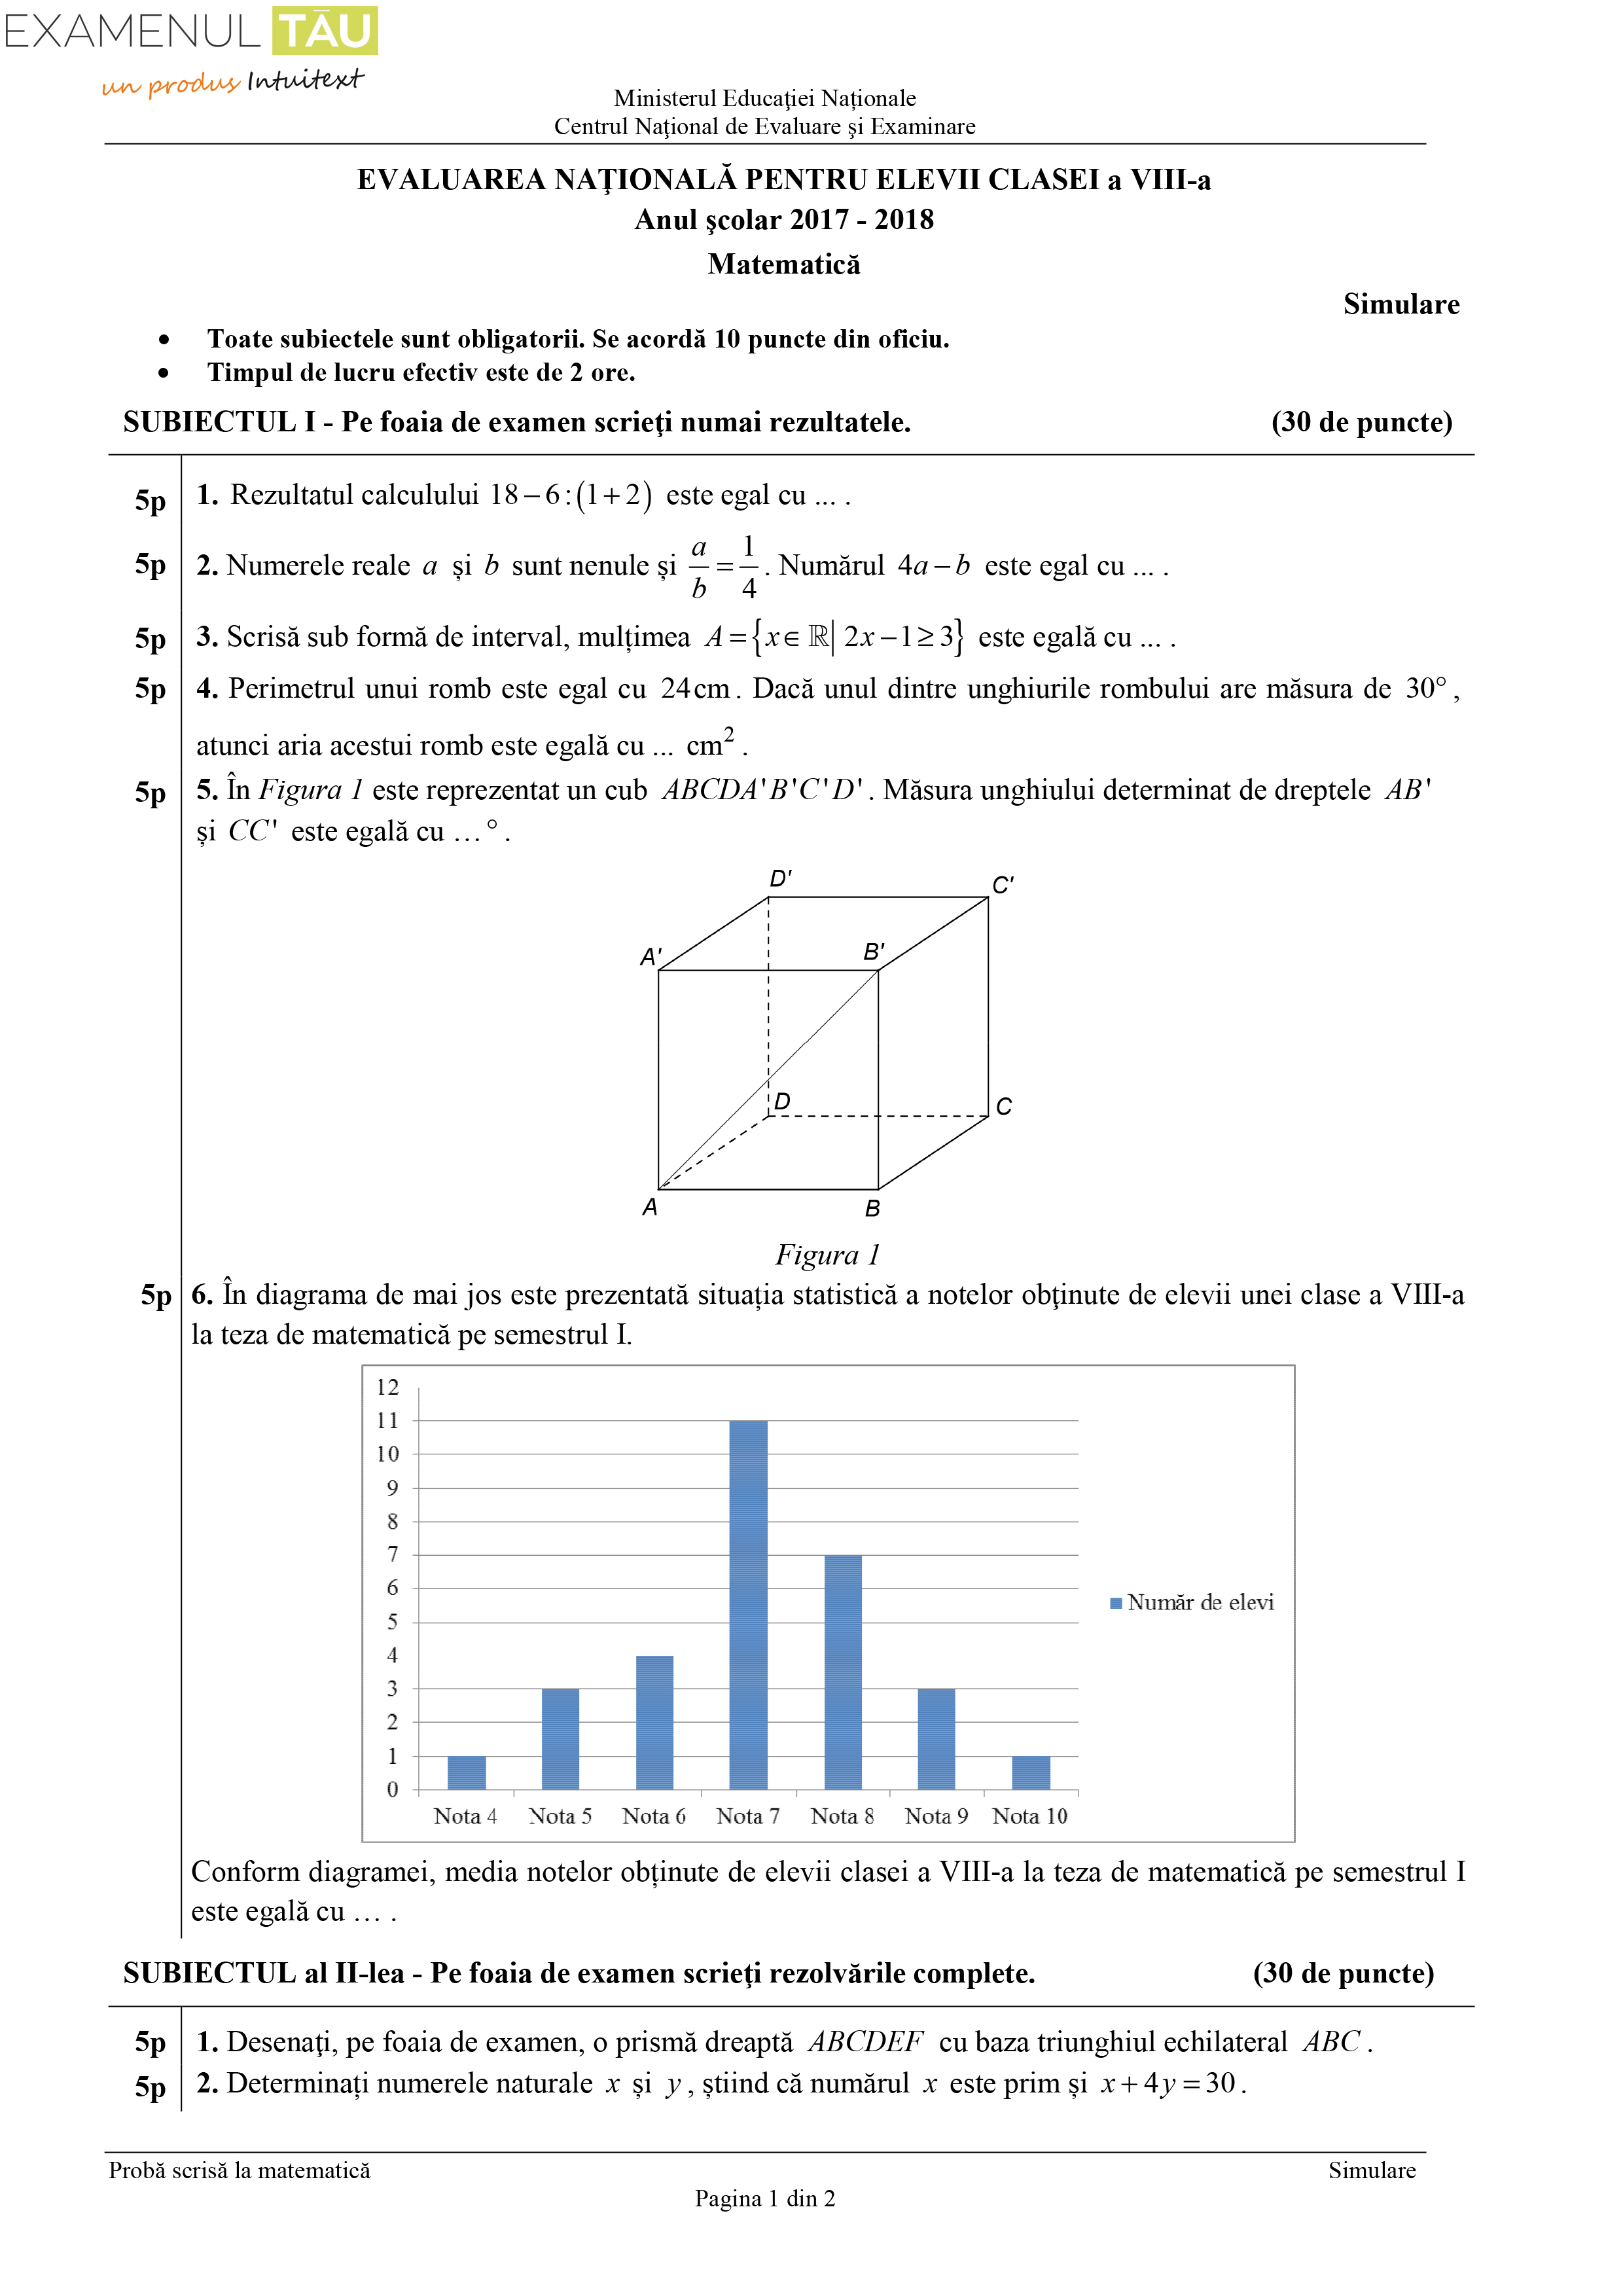 subiecte-simulare-evaluare-nationala-2018-matematica (1)